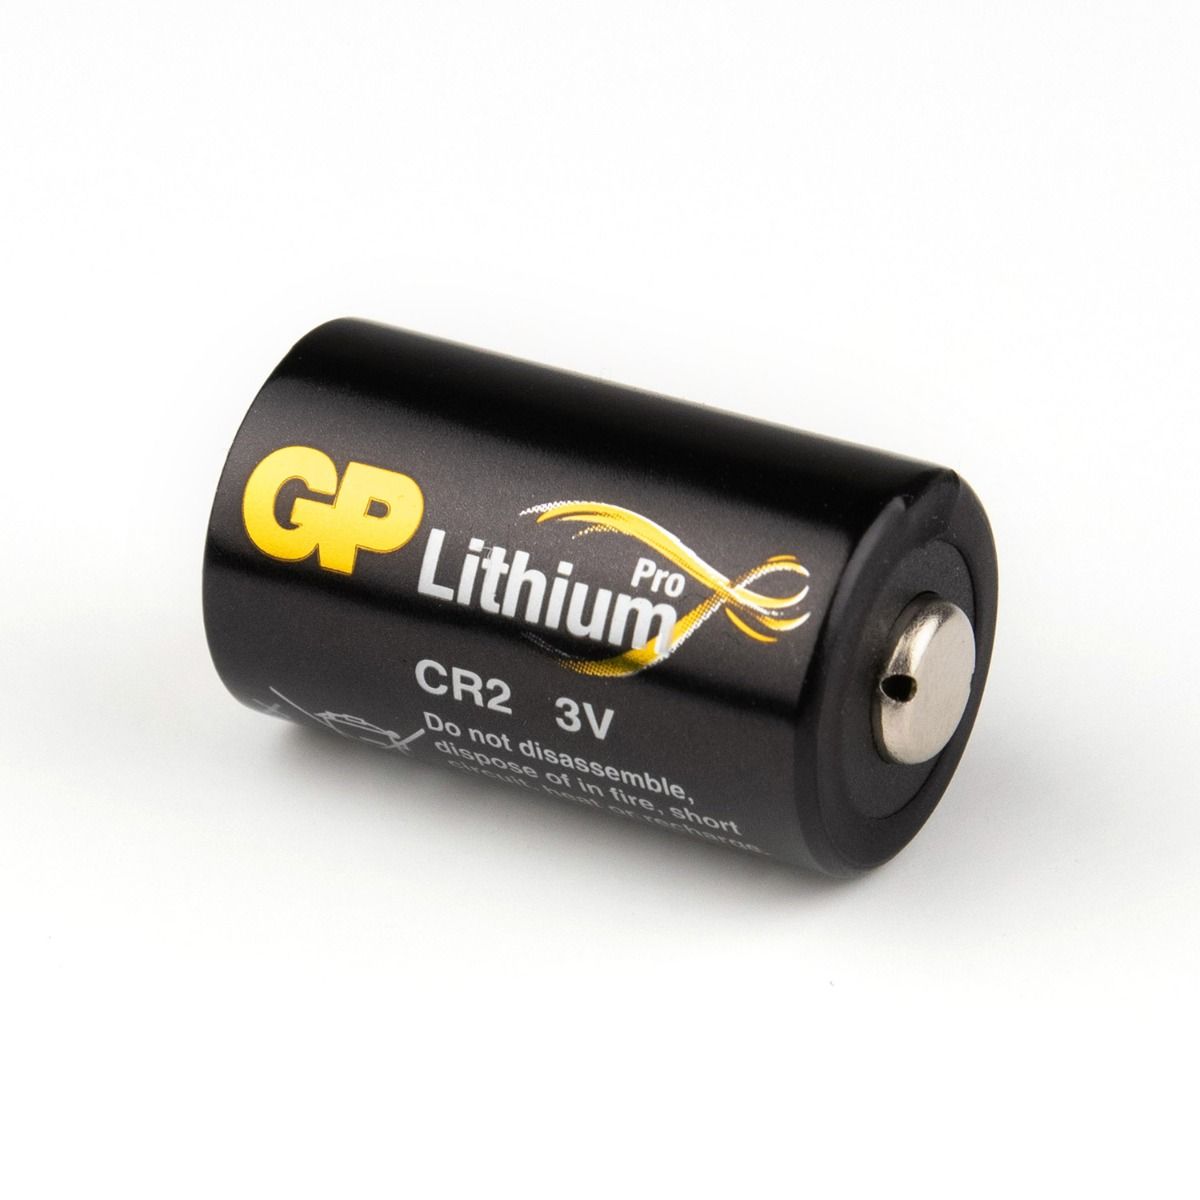 G.P Batterij Lithium Cr2 3Volt